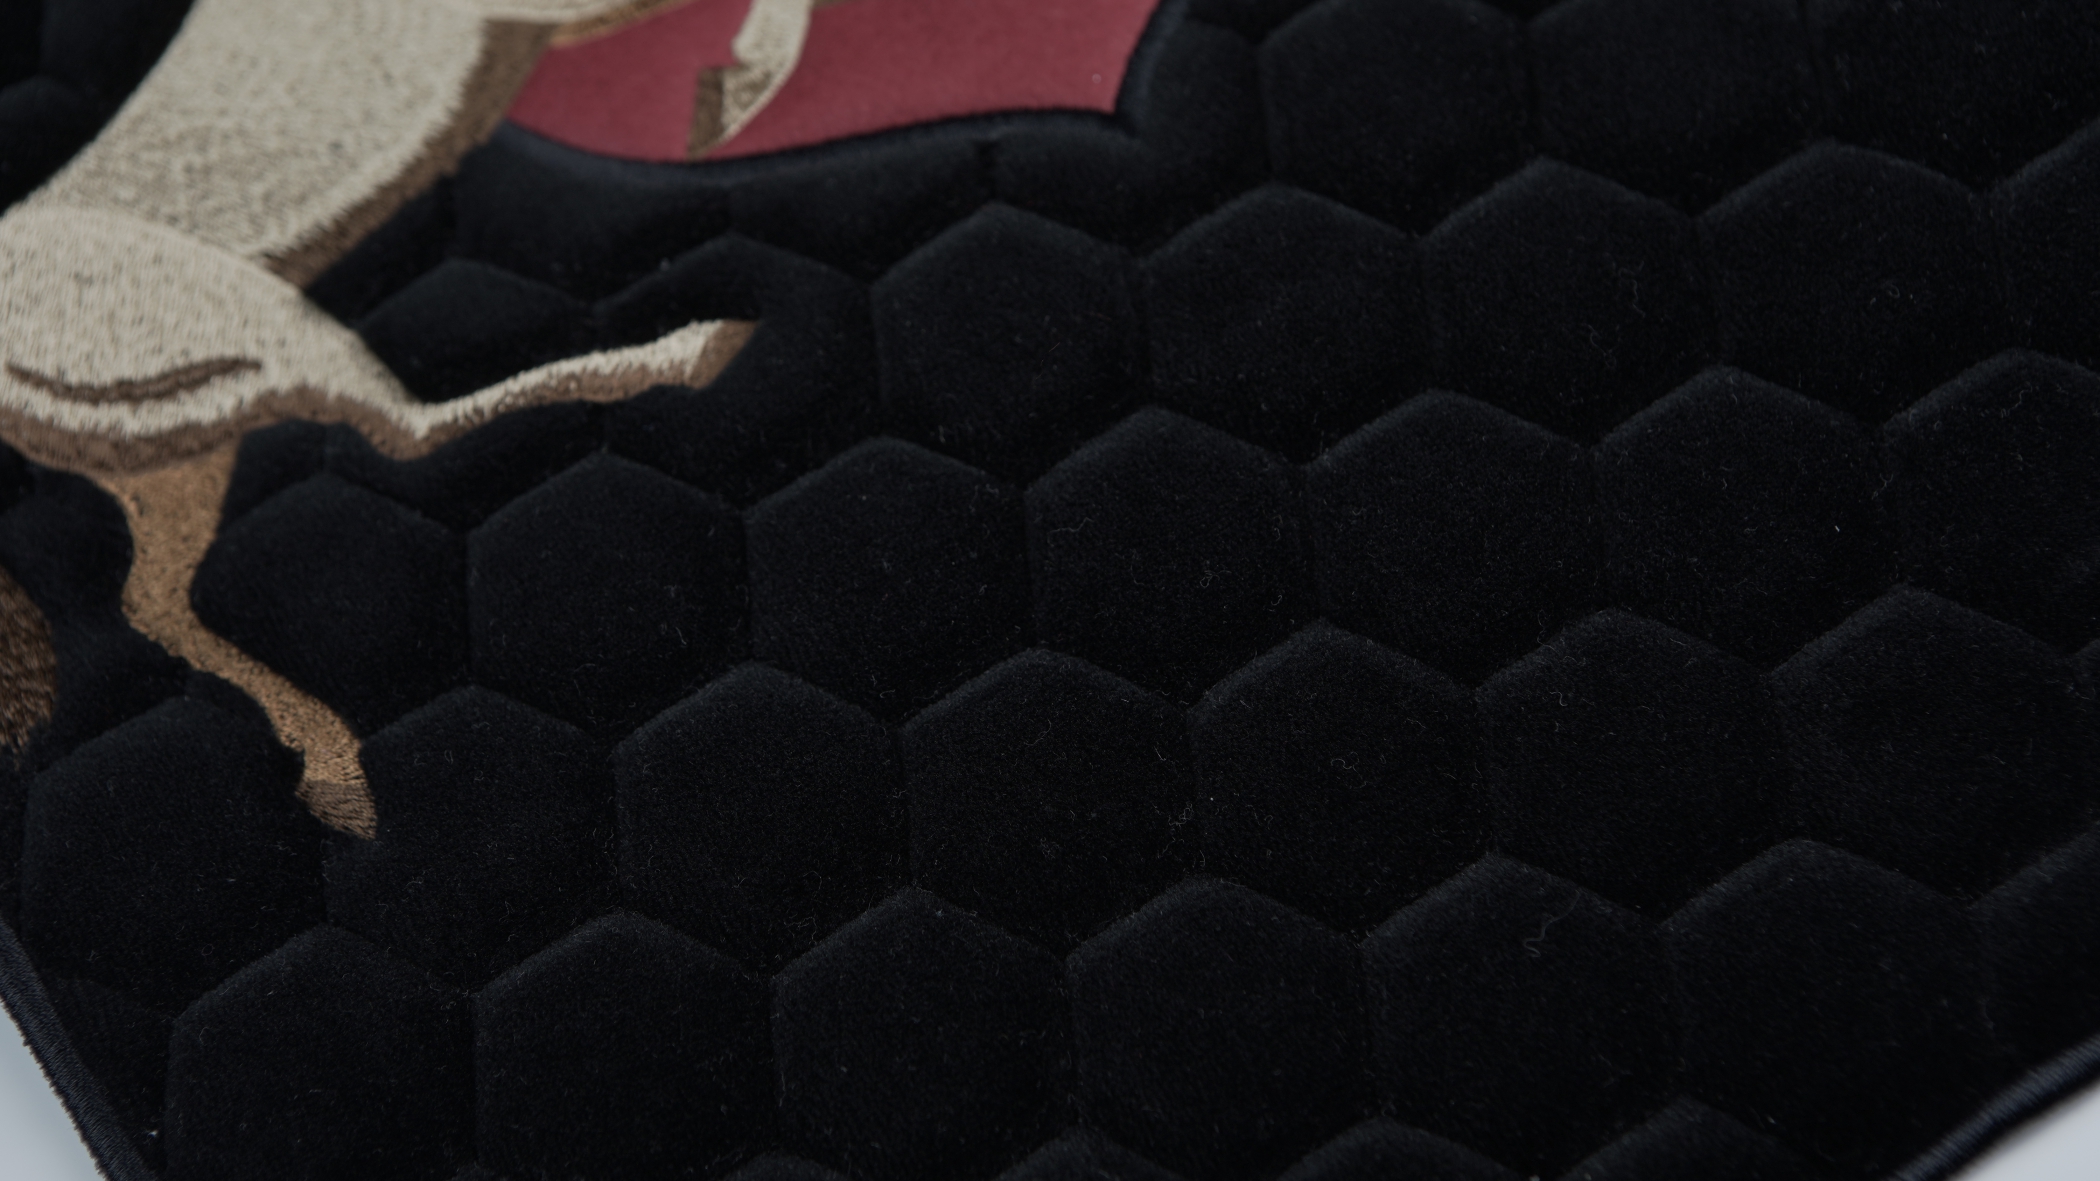 Detalhe de bordado acolchoado desenvolvido pela Bordados Oliveira na cor preta